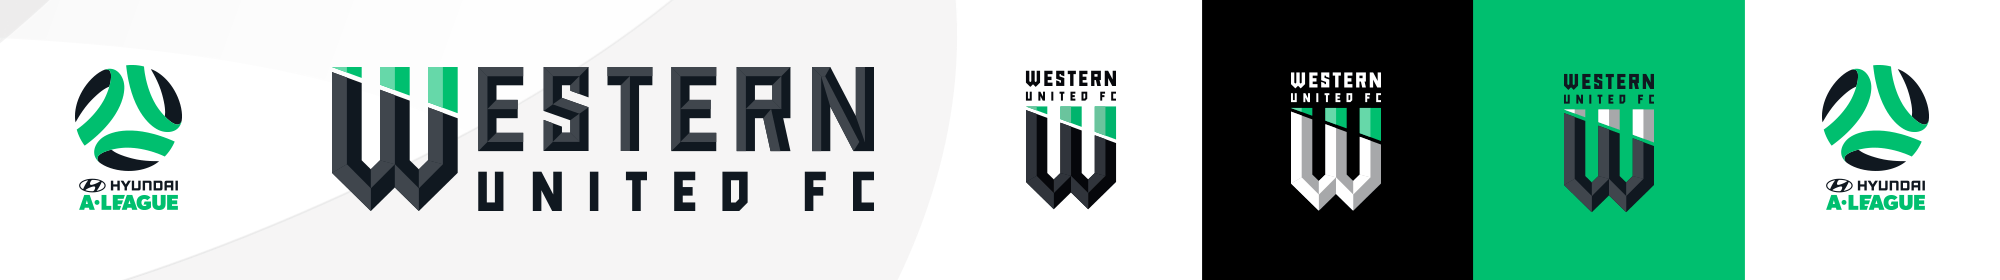 Comau Logo - Western United FC unveil logo | Hyundai A-League